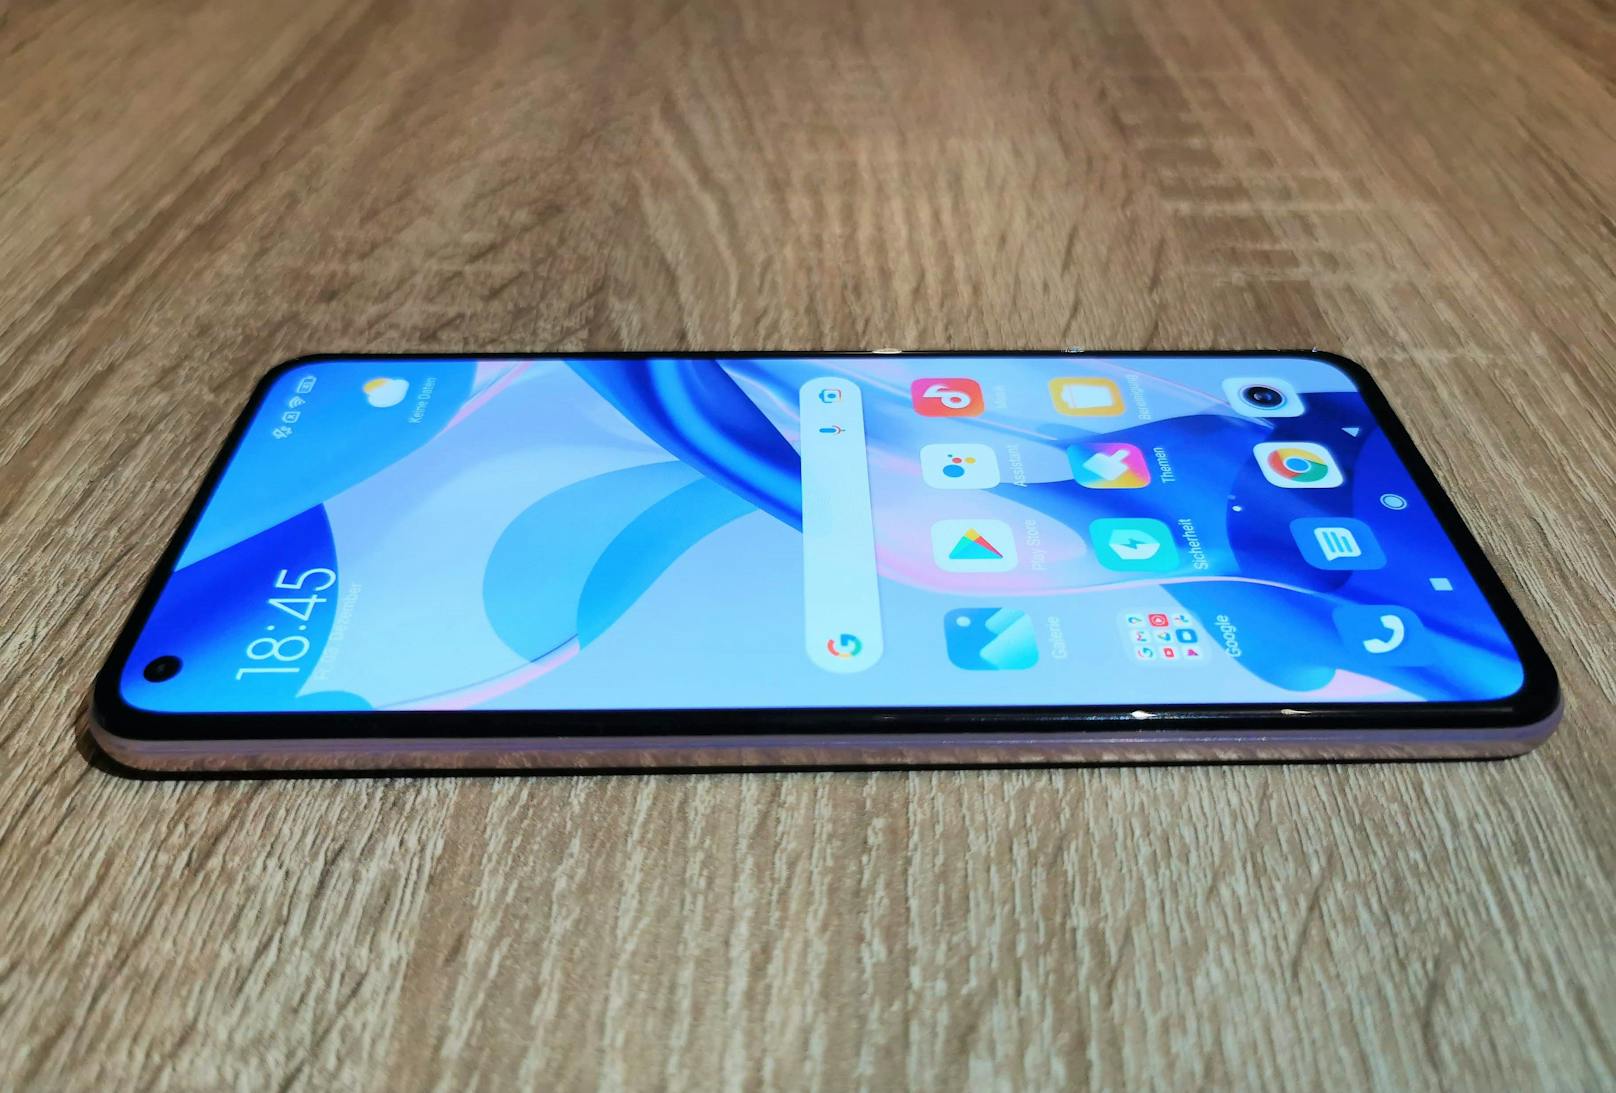 Punkten kann das Xiaomi 11 Lite 5G NE im "Heute"-Test vor allem mit seinem ansprechenden Bildschirm, dem schicken Design und neuer Technik wie 5G sowie einem tollen Preis für das Gesamtpaket.